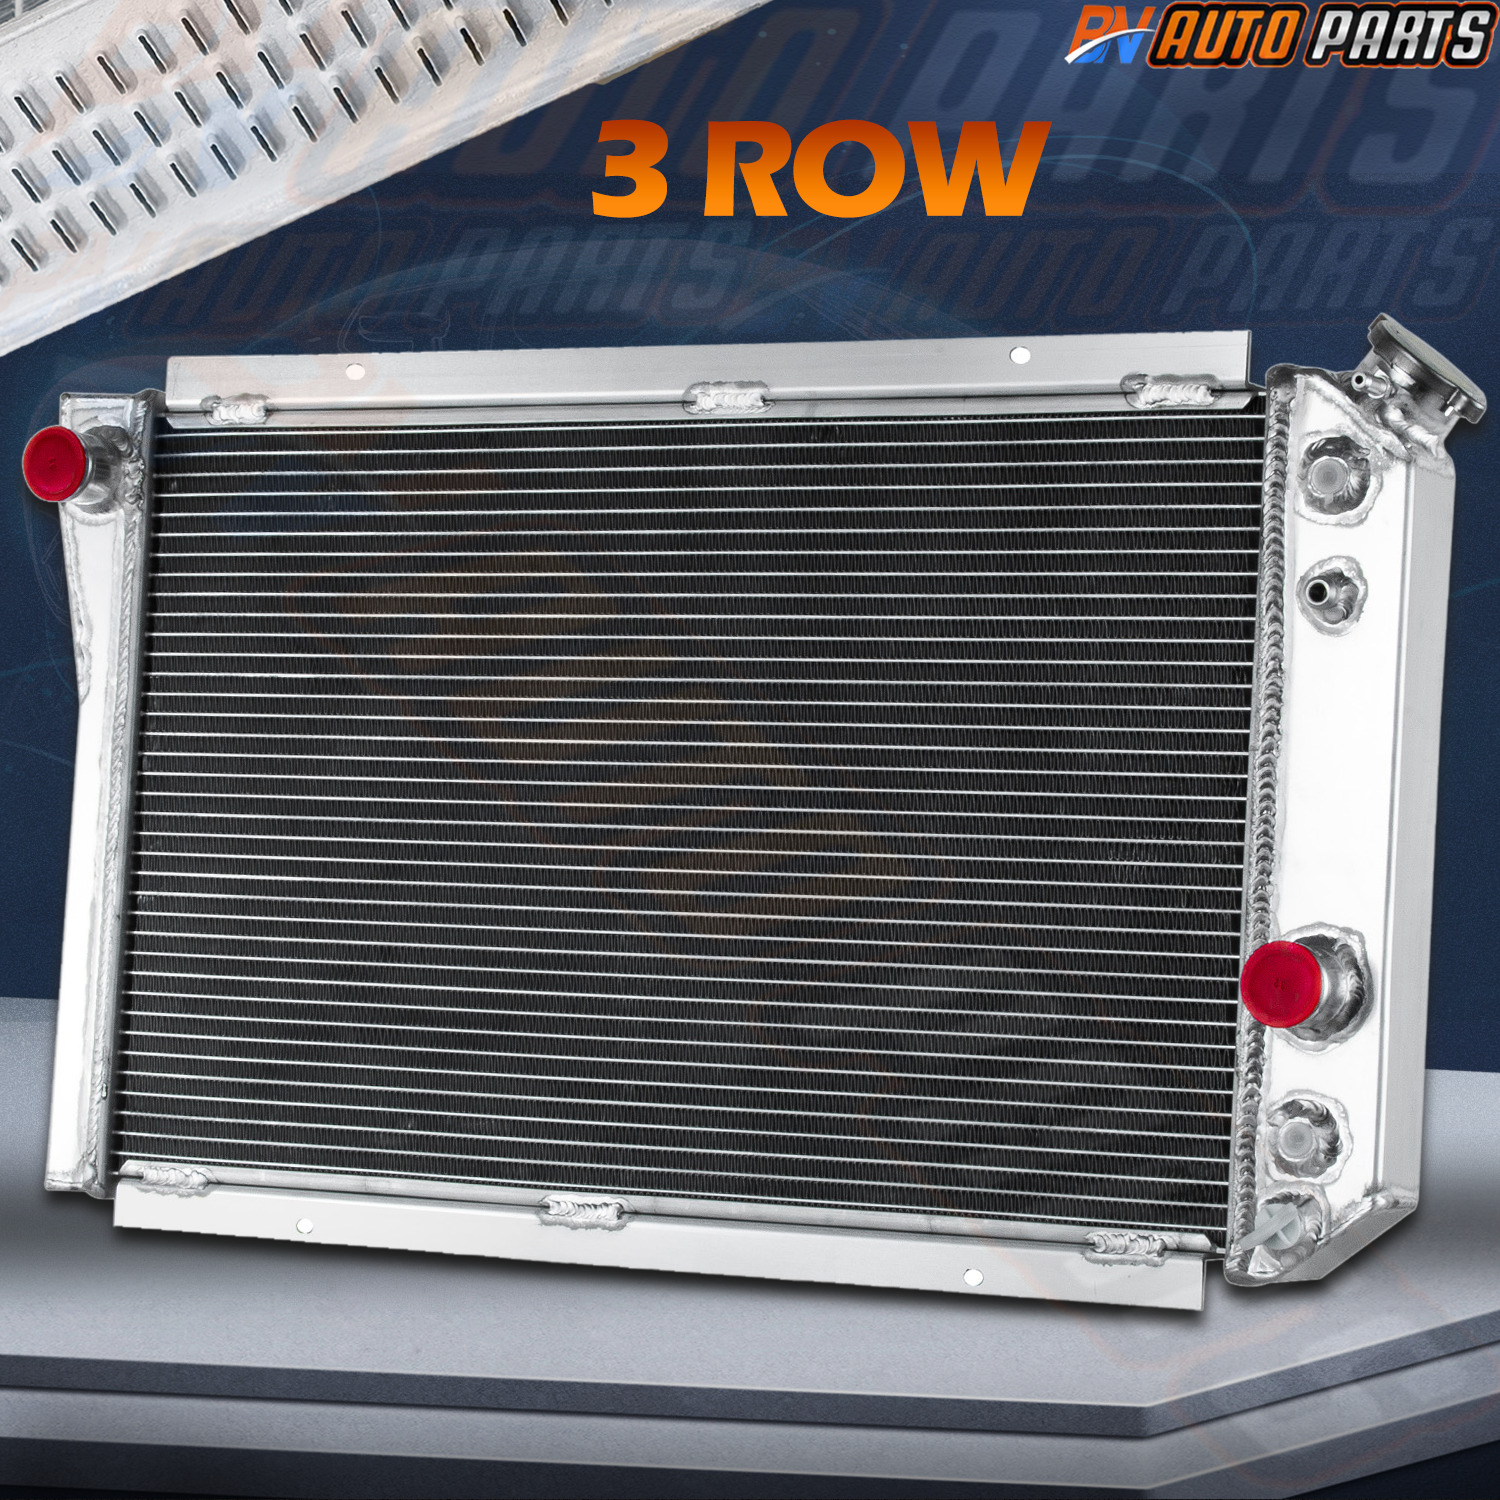 3 Row Aluminum Radiator For 1982-2002 CHEVY S10 BLAZER/S10/CORVETTE 5.7L V8 AT